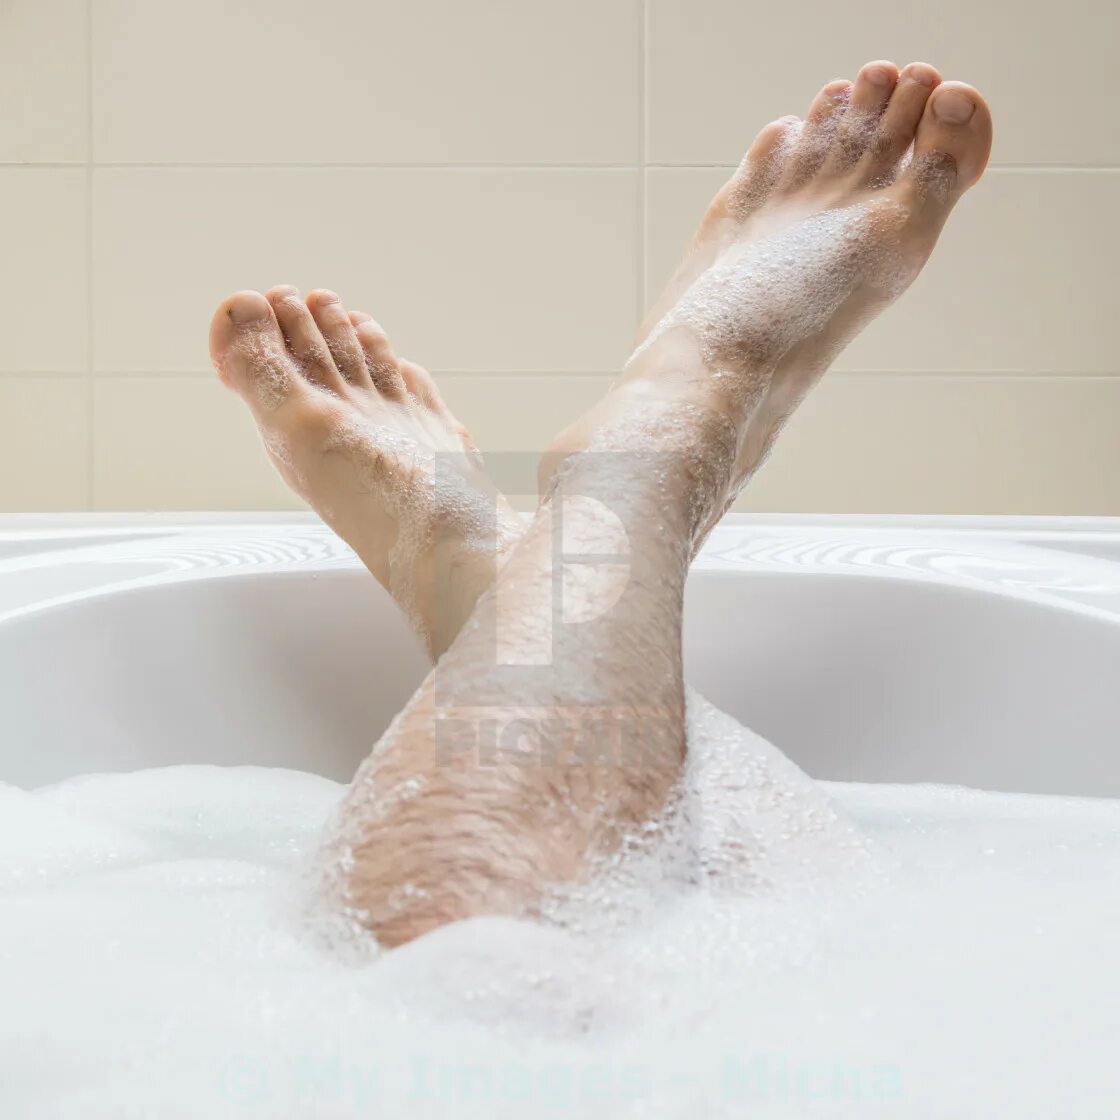 Мужские ножки в ванной. Мужские ноги в ванной с пеной. Красивые мужские ноги в ванной. Ноги парня в ванной.